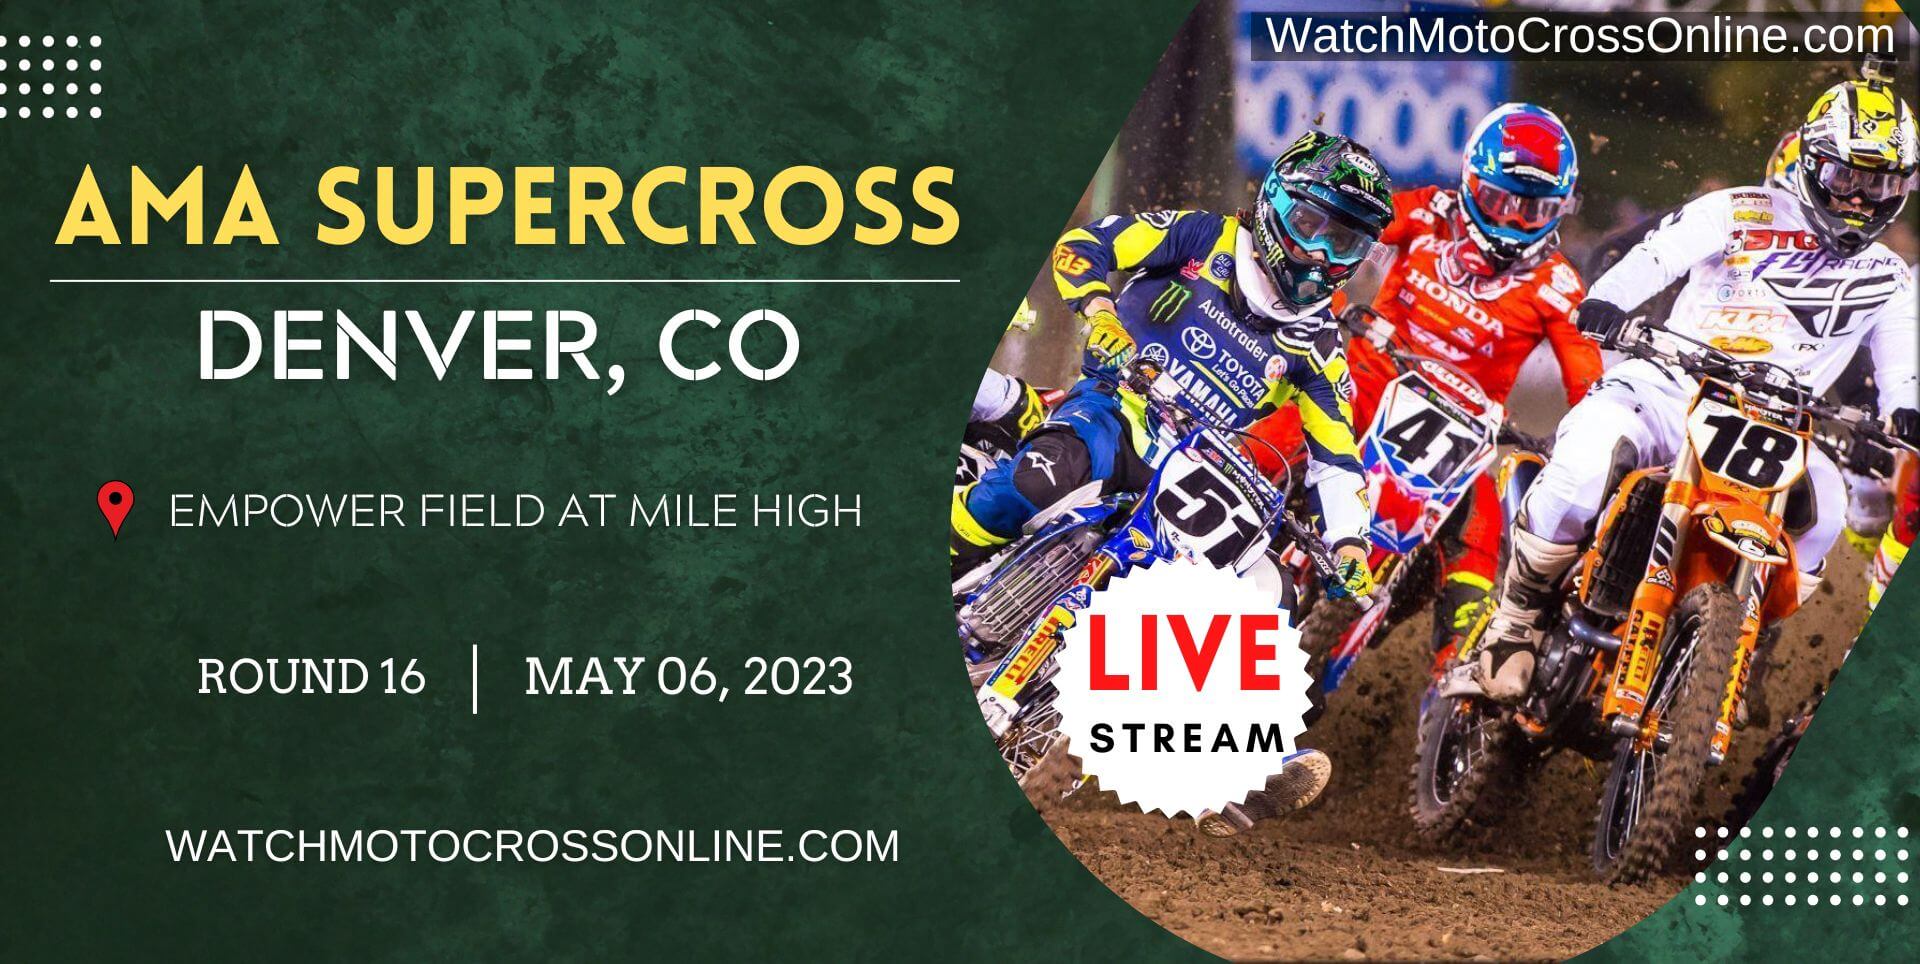 AMA Supercross Denver Live Stream 2023 | Round 16